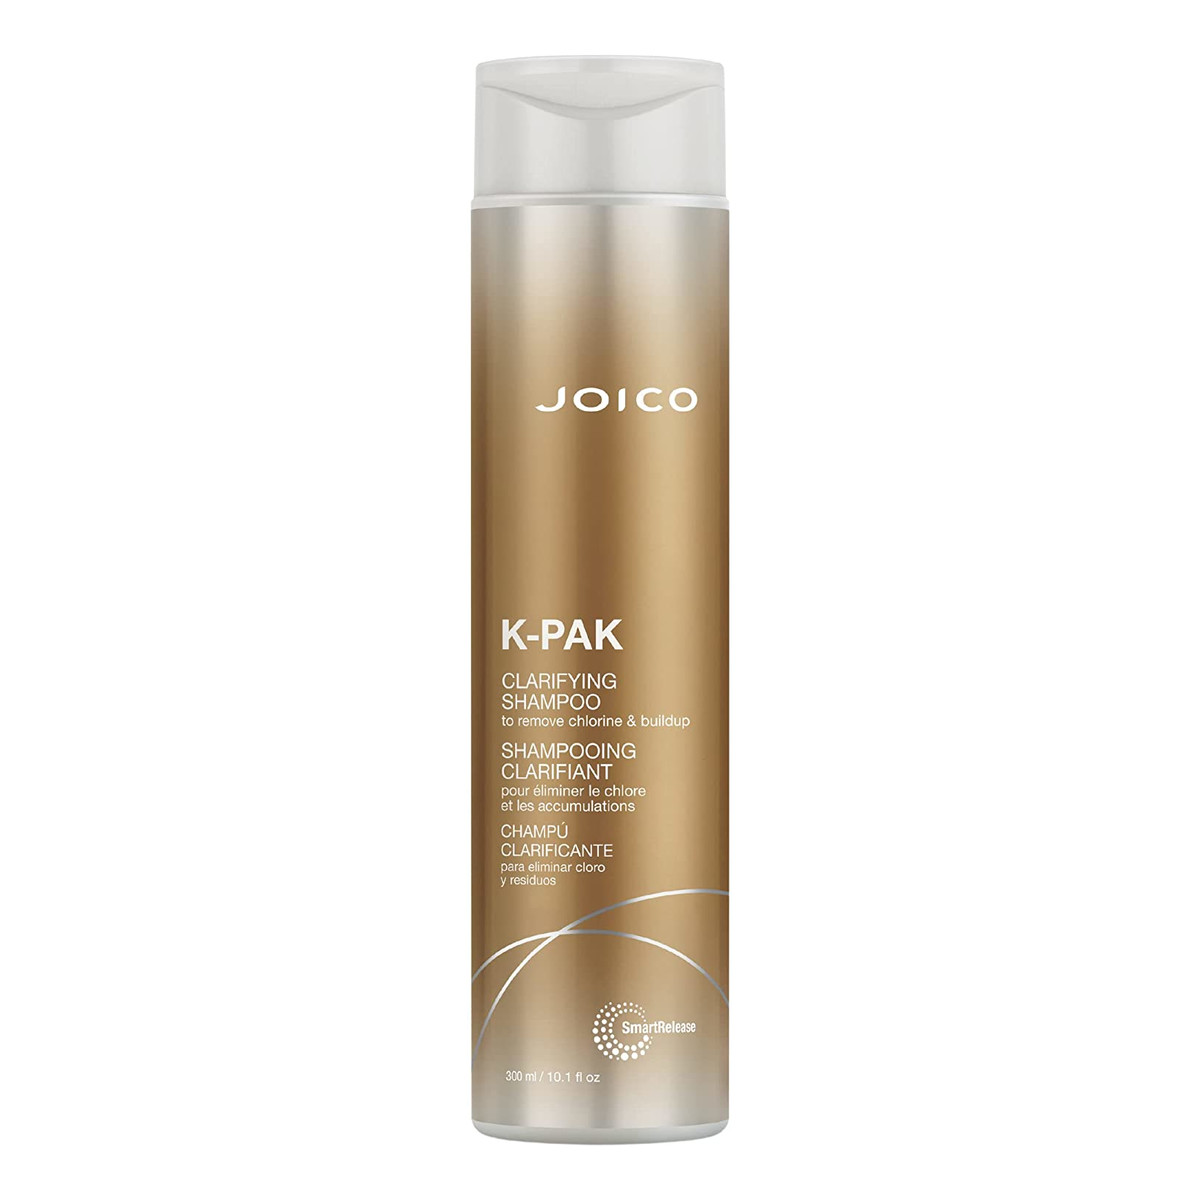 Joico K-pak shampoo clarifying szampon oczyszczający 300ml